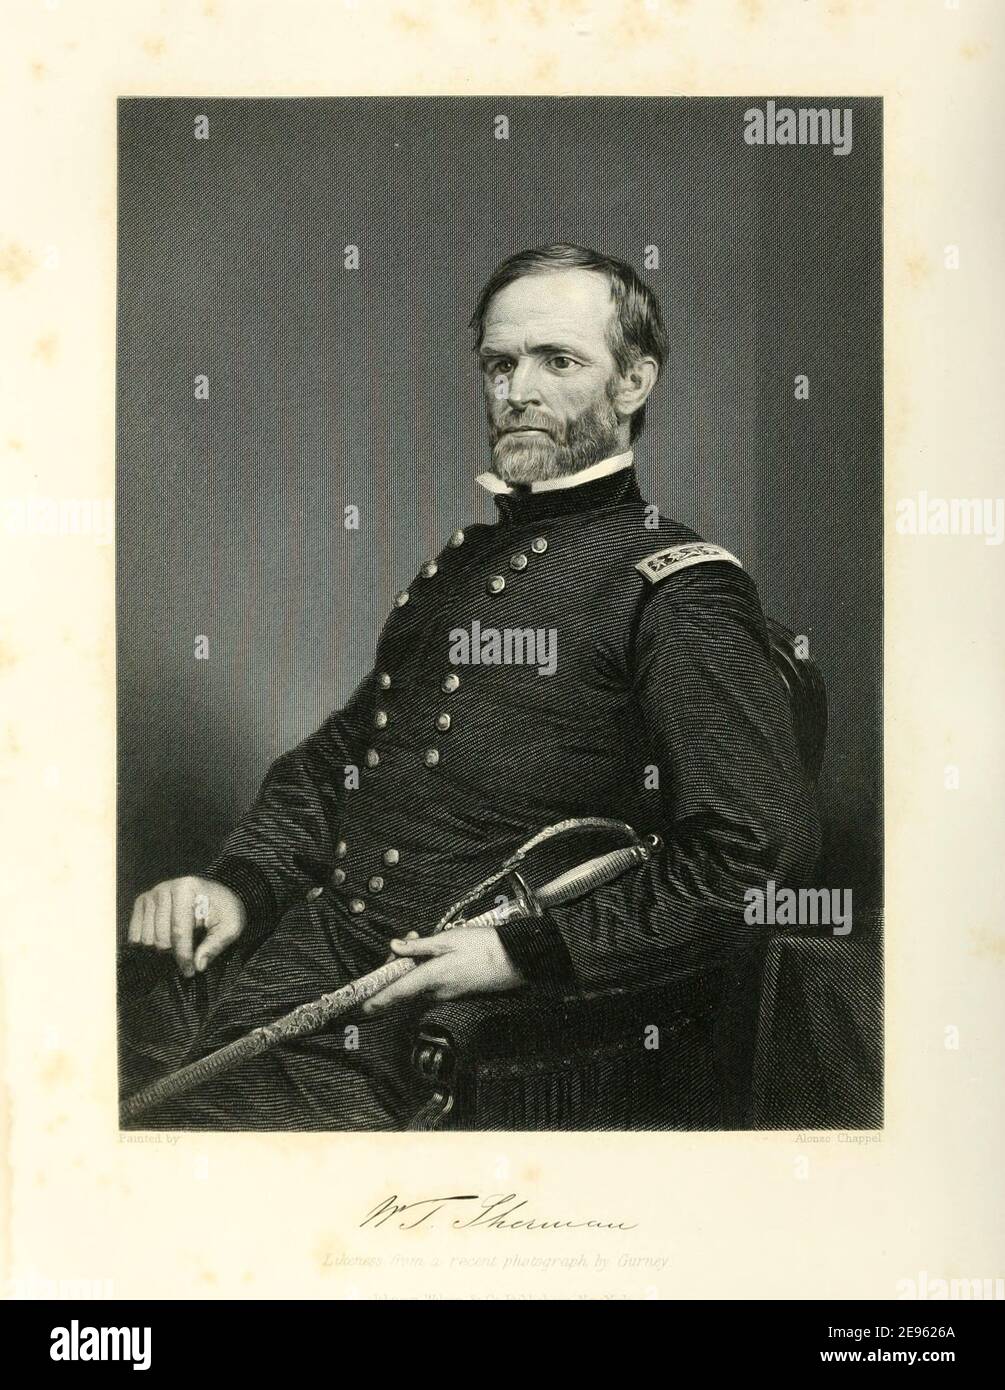 Eingraviertes Porträt nach einer Fotografie des amerikanischen Bürgerkriegsgenerals William Tecumseh Sherman (1820 - 1891), 1873. Fotografie von Jeremiah Gurney (1812 - 1895). Stockfoto